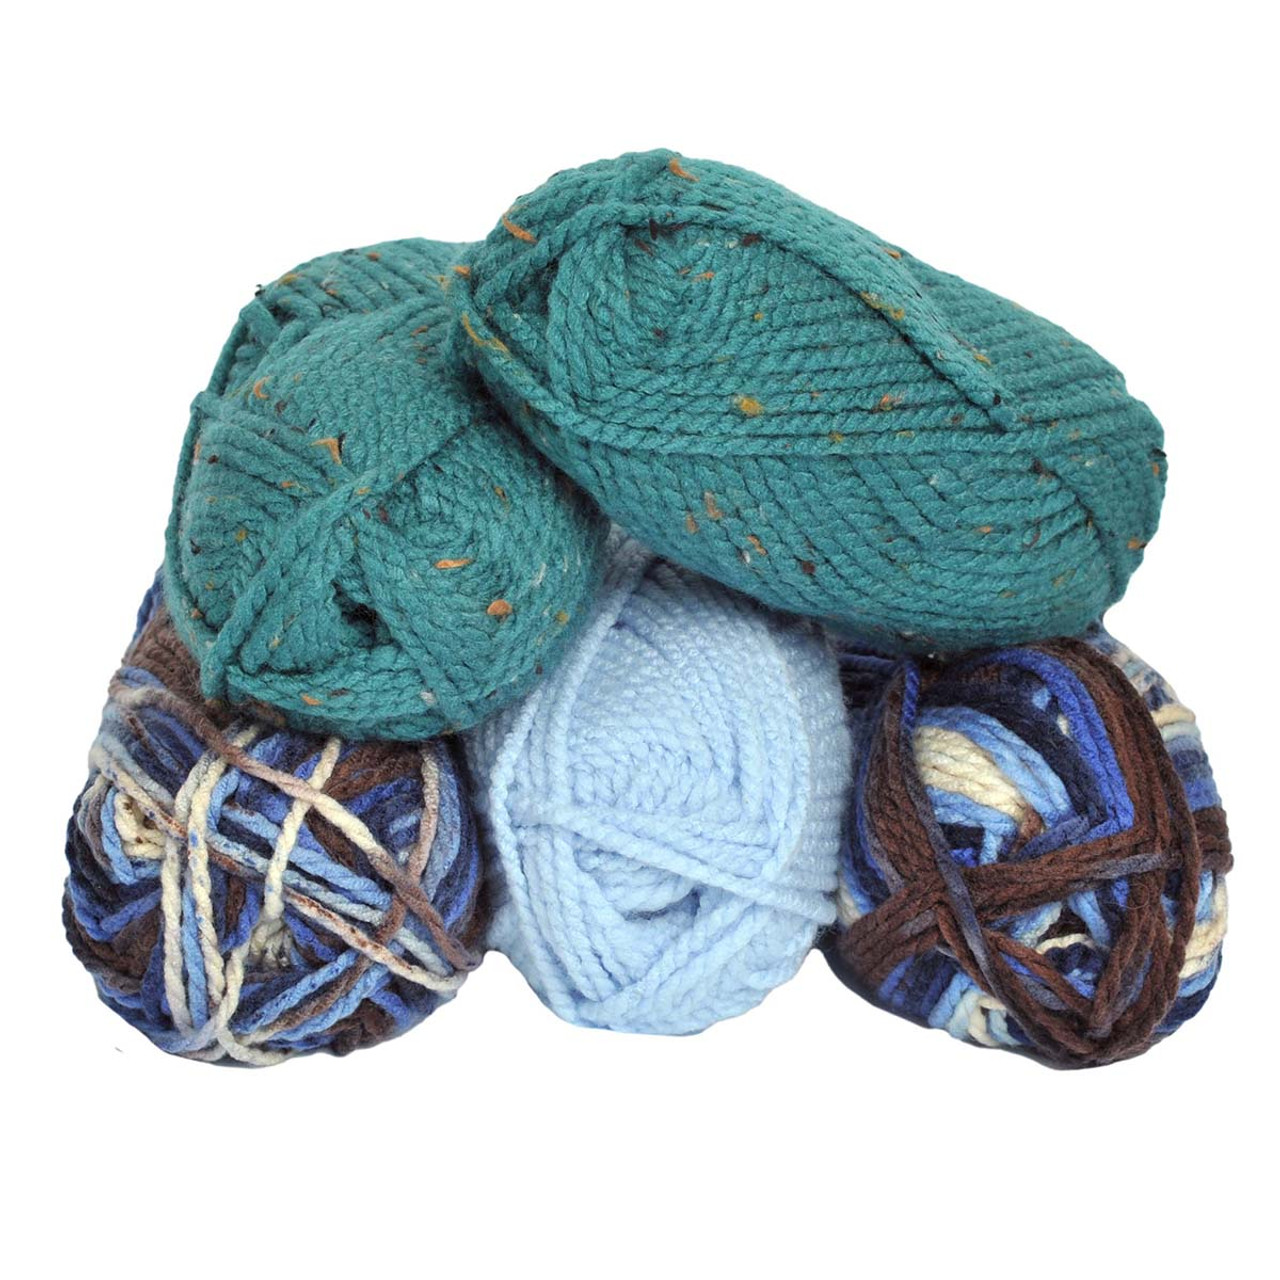 Medium Weight Yarn, Acrylic Yarn For Crochet, Wool Factory